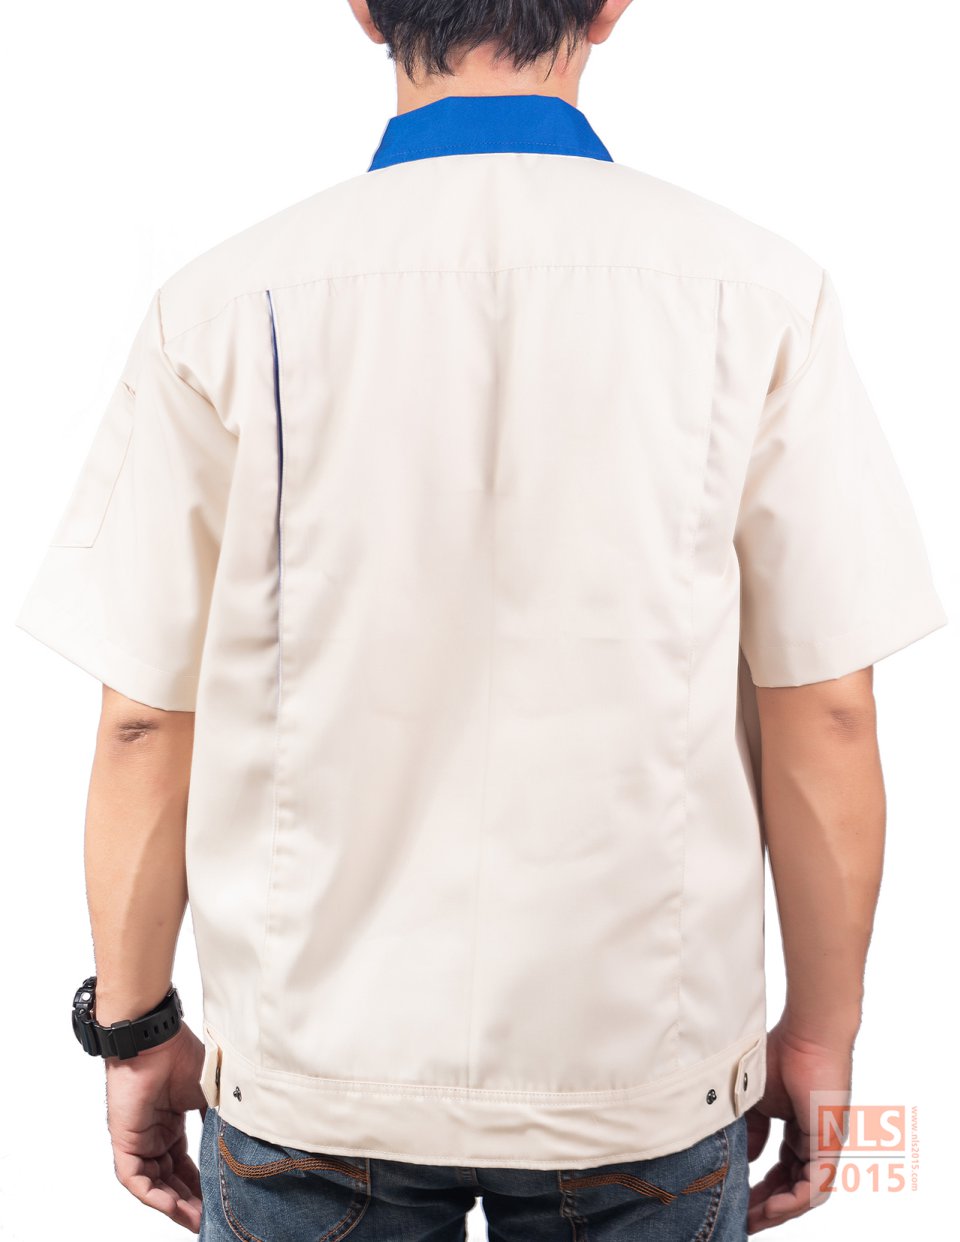 ยูนิฟอร์มพนักงานแขนสั้น ตัดต่อสองสี สาบหน้าเป็นซิปมีผ้าปิดซิปฟันกระดูก มีกระเป๋าเจาะล้วงข้าง กระดุมสแน็ปรูปที่ 